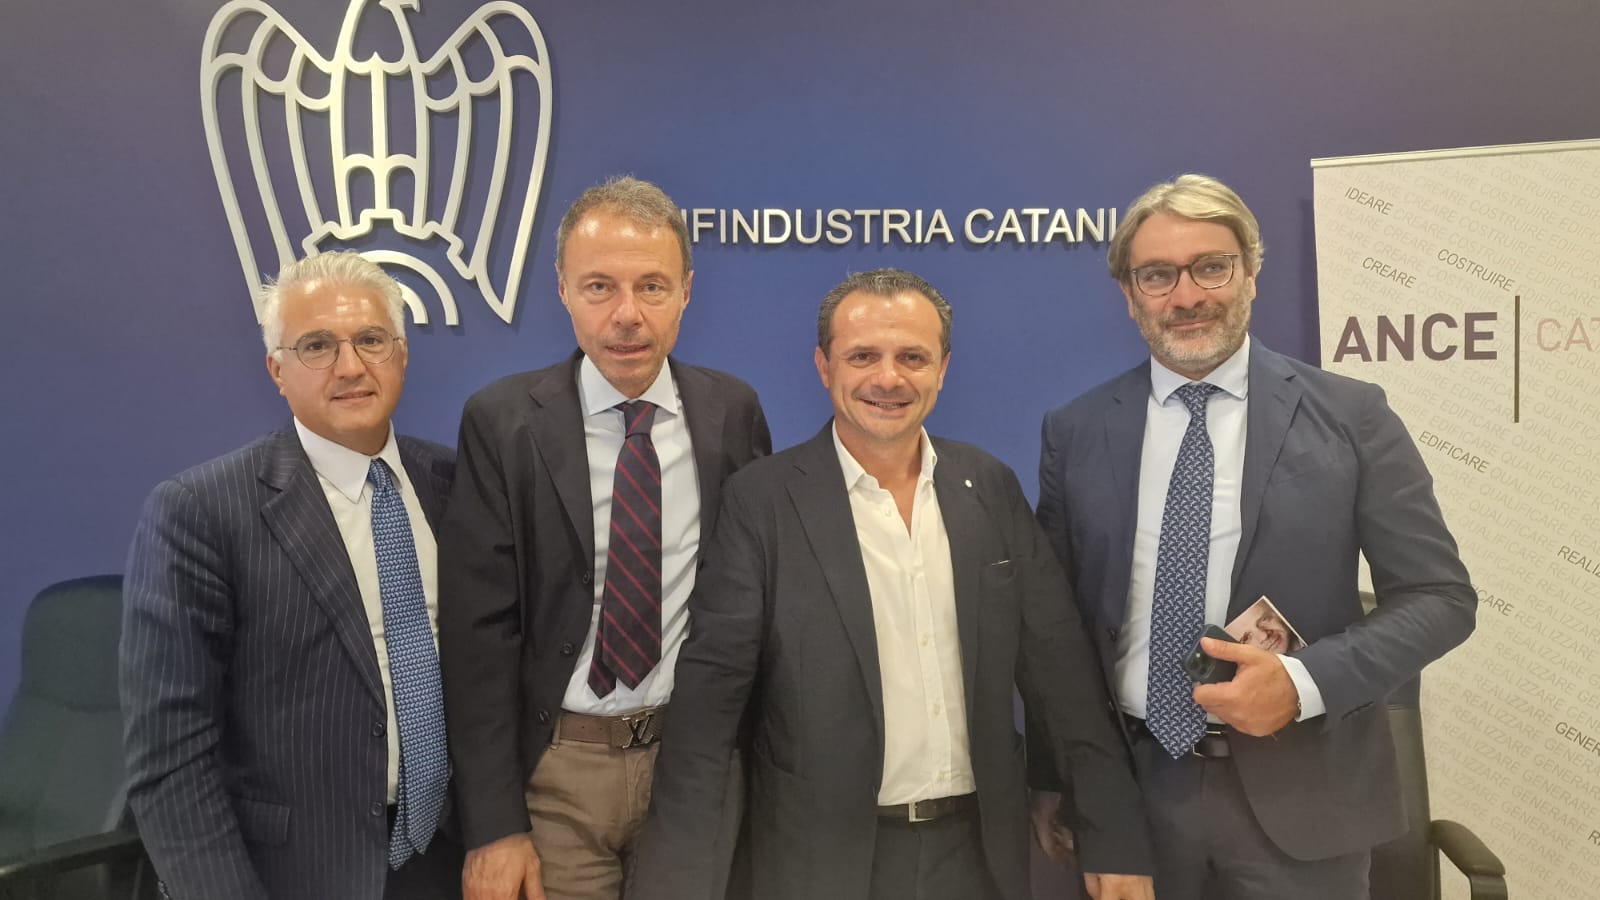 Elezioni regionali, De Luca a Catania incontra Confindustria e Ance